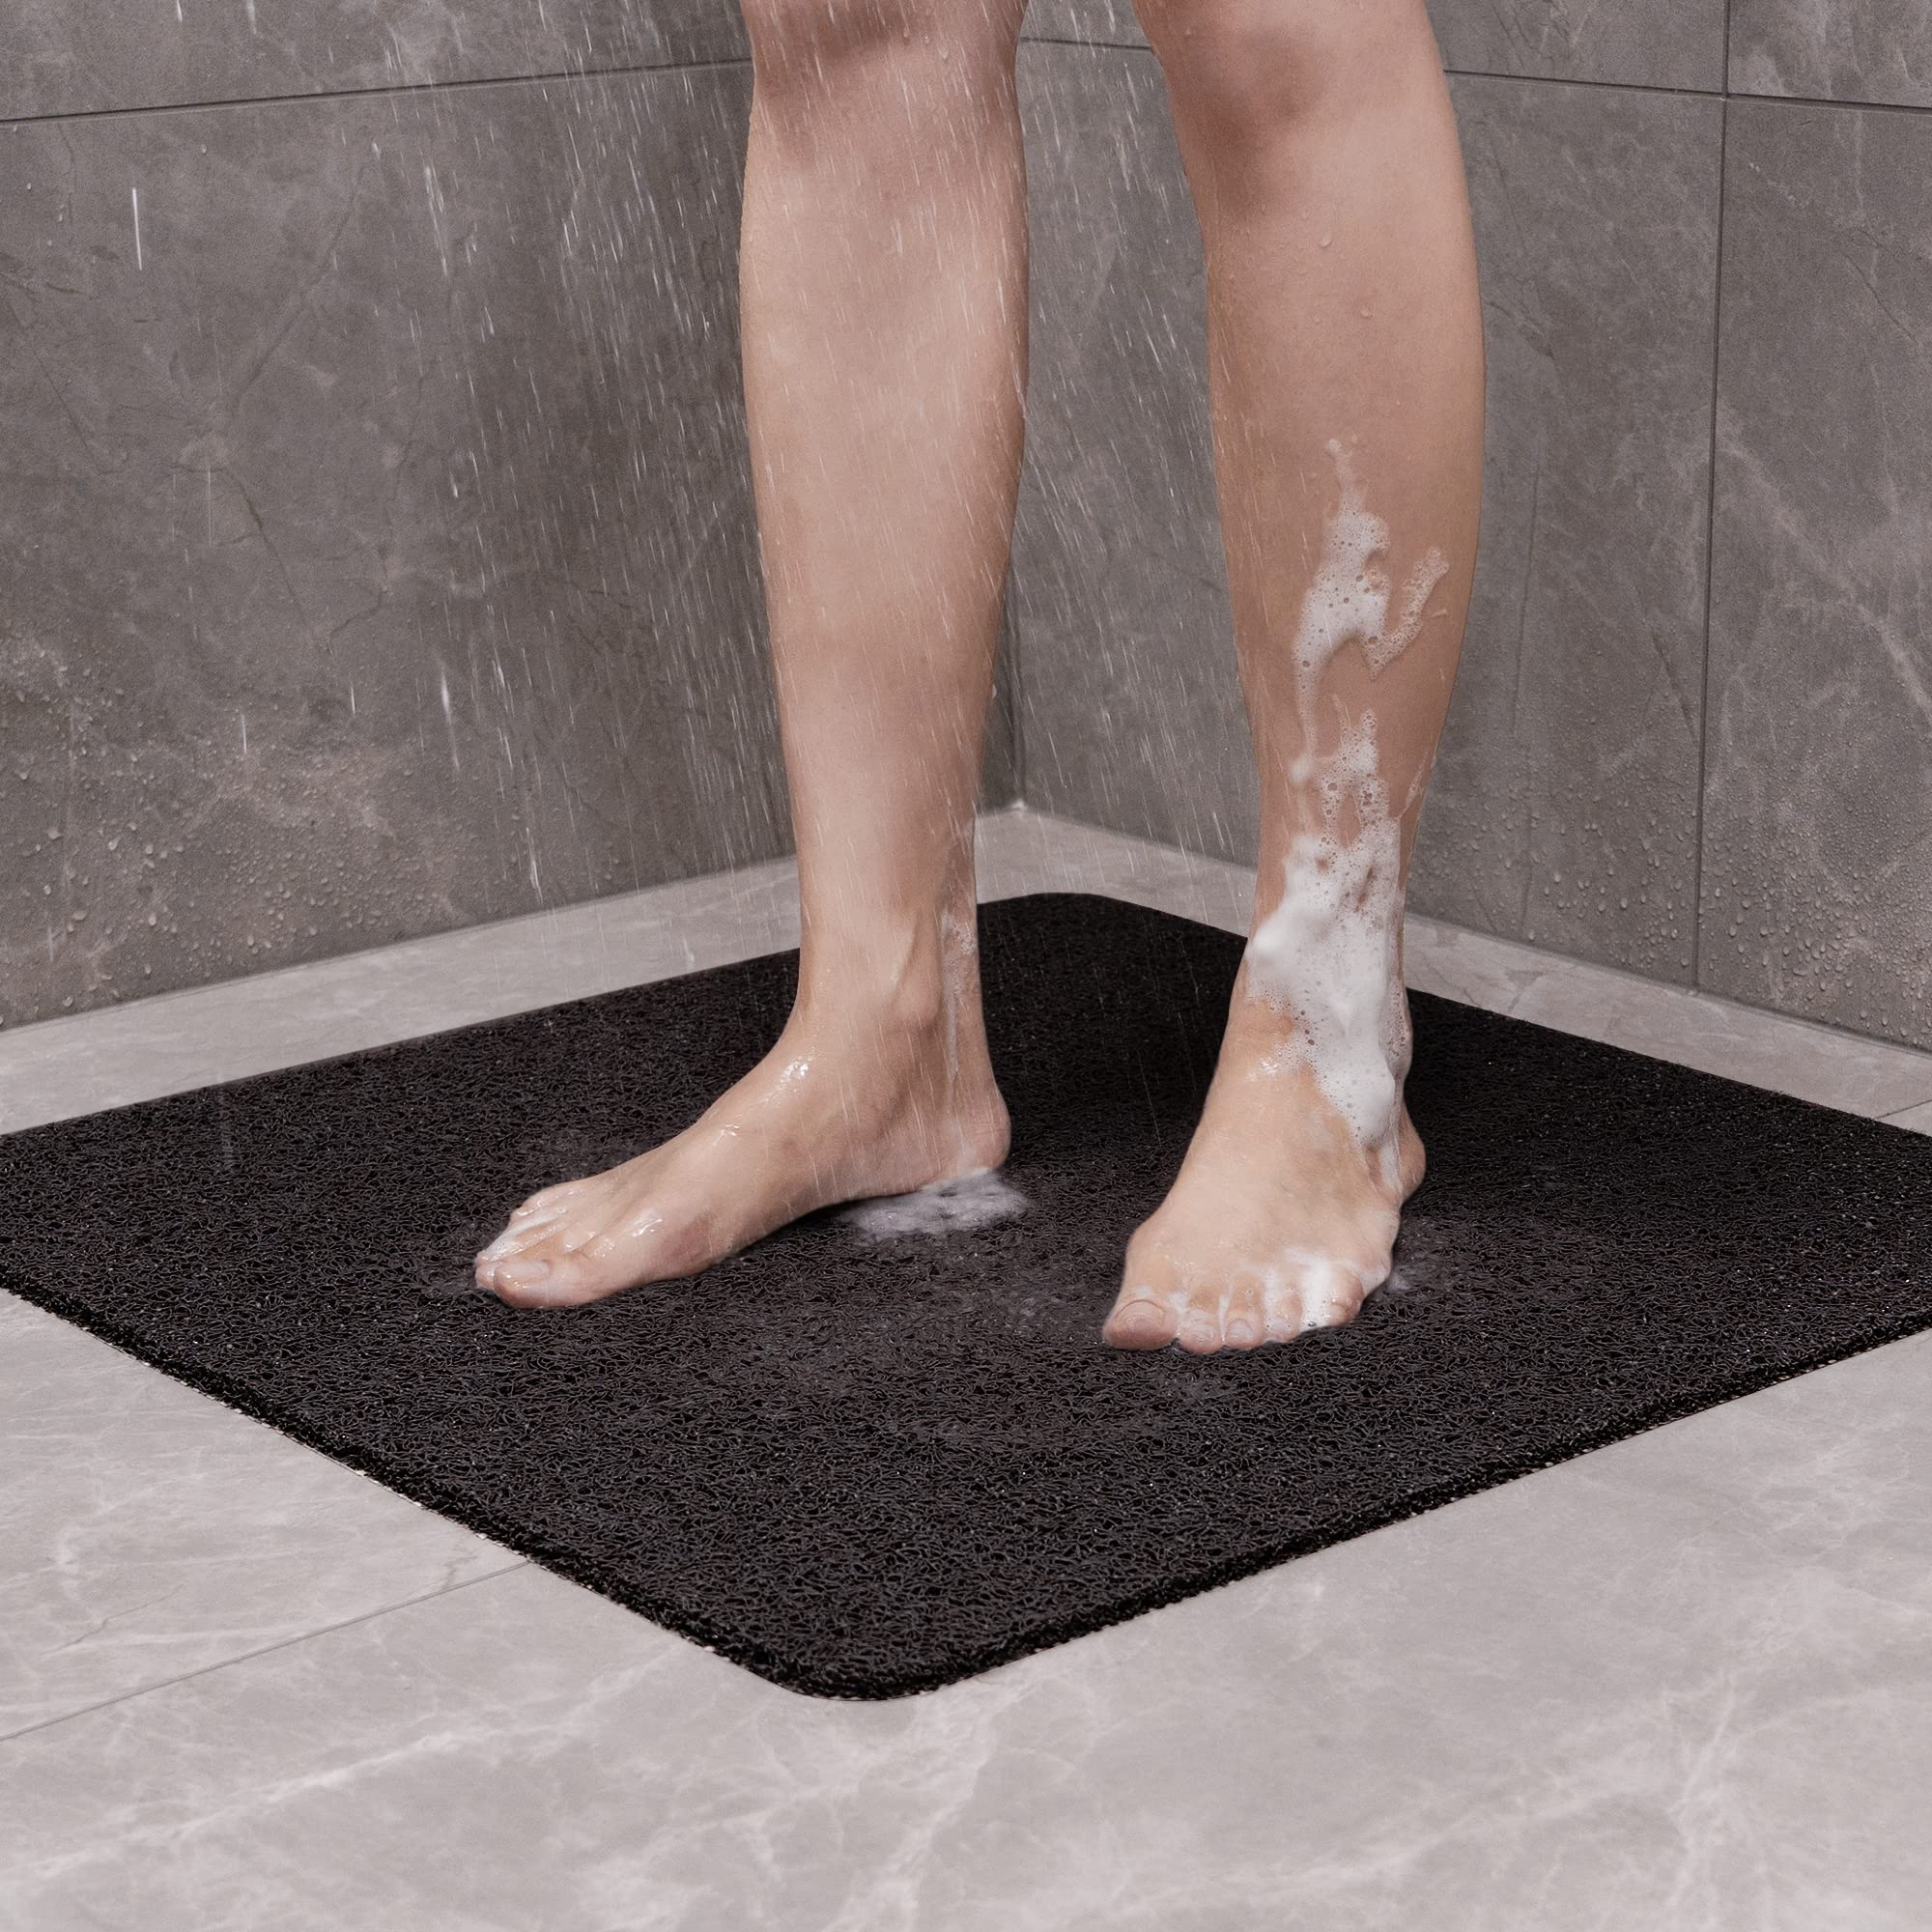 Shower Mat Bathtub Mat Non-Slip, Soft Tub Mat with Drain, PVC